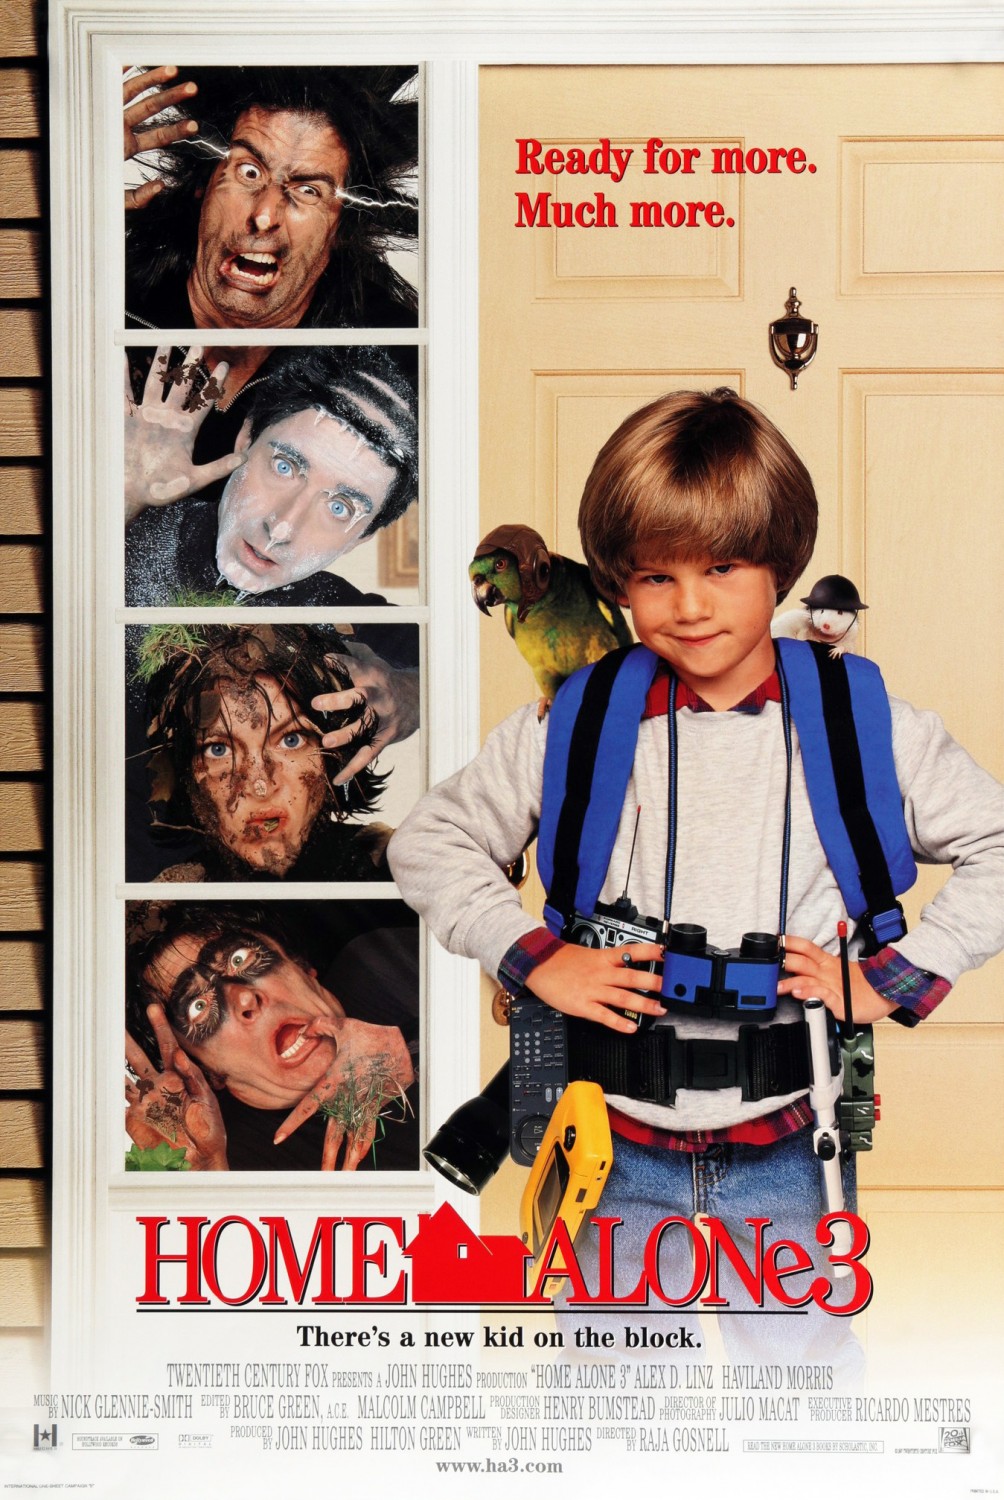 Home Alone 3 (1997) โดดเดี่ยวผู้น่ารัก 3 Alex D. Linz